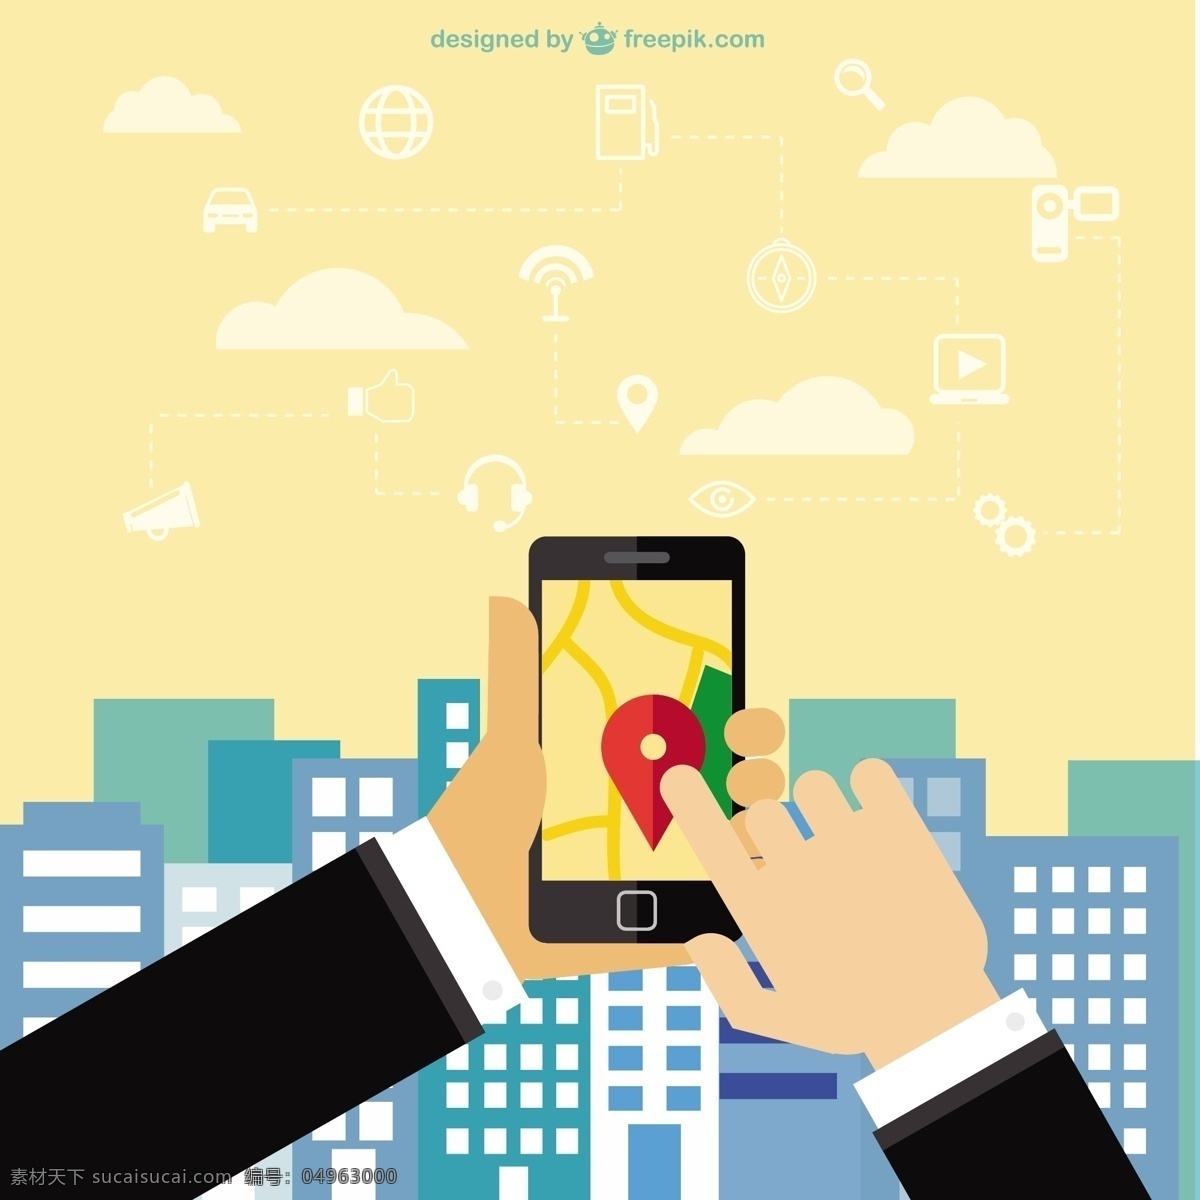 手机 导航 应用程序 电话 地图 技术 移动 智能手机 位置 应用技术 移动电话 gps 移动app 地址 黄色